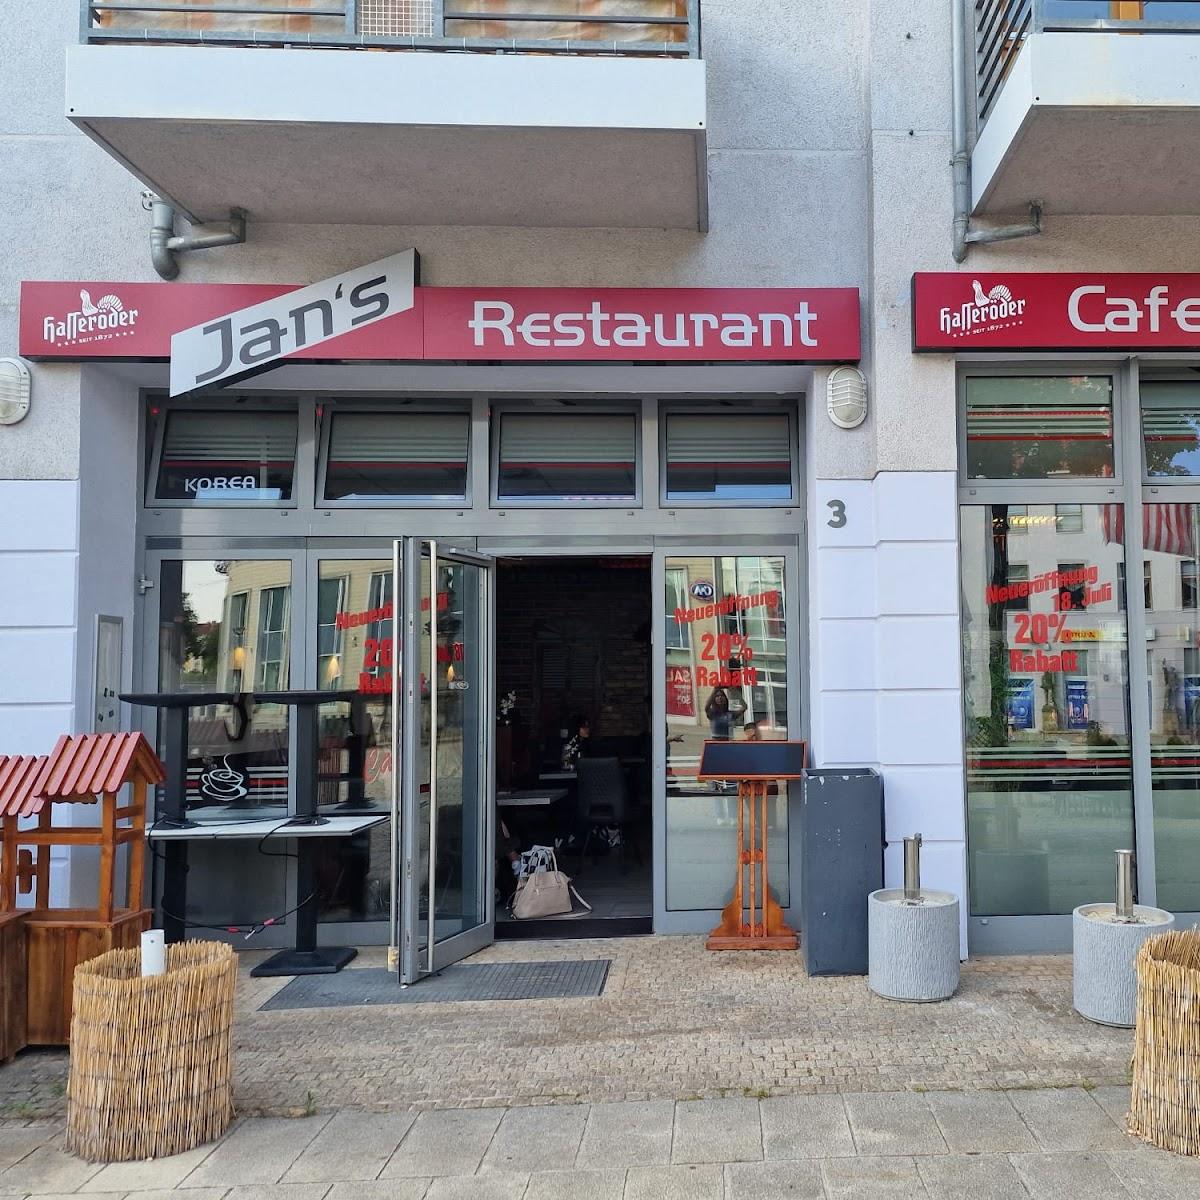 Restaurant "Jan´s Restaurant" in Halberstadt